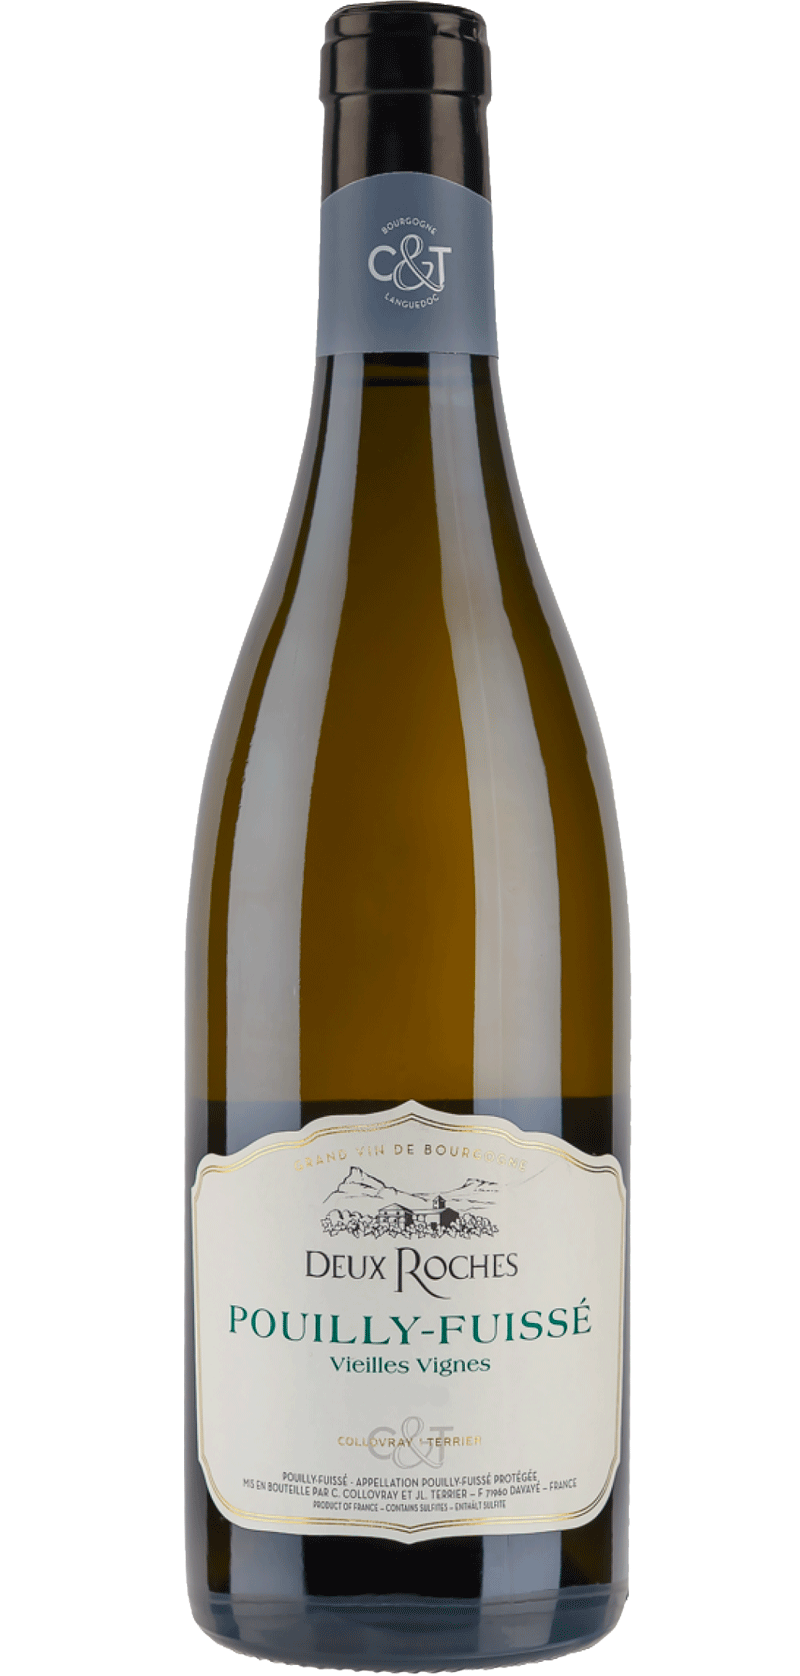 Pouilly-Fuissé Vieille Vignes - Deux Roches 2015 - Vin Blanc